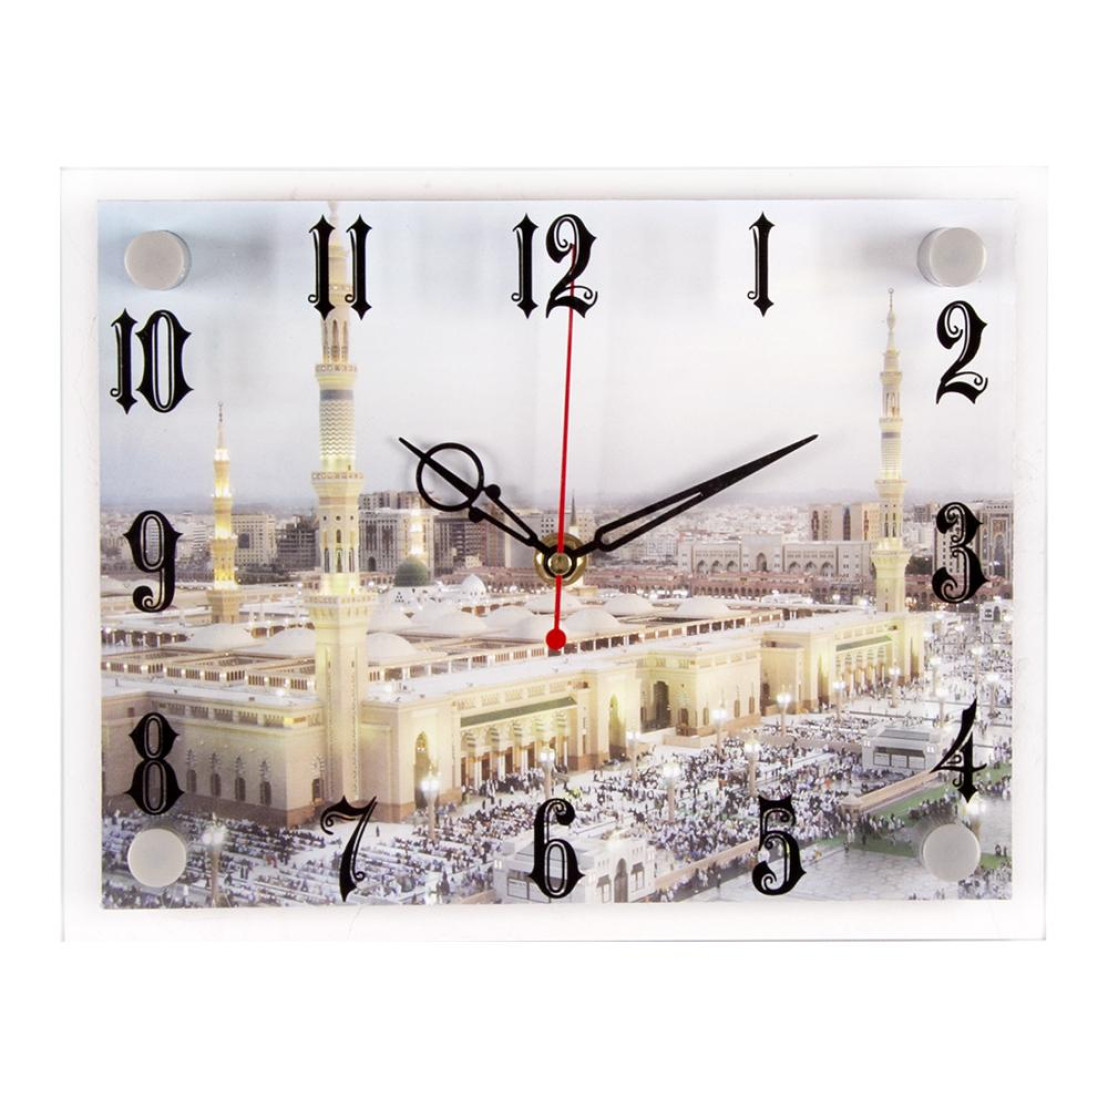 Часы с мечетью настенные. Оригинал часы настенные для мечети. Настенные электронные часы с мечетью 21 век. 21 Век 2026-995. Часы 2026